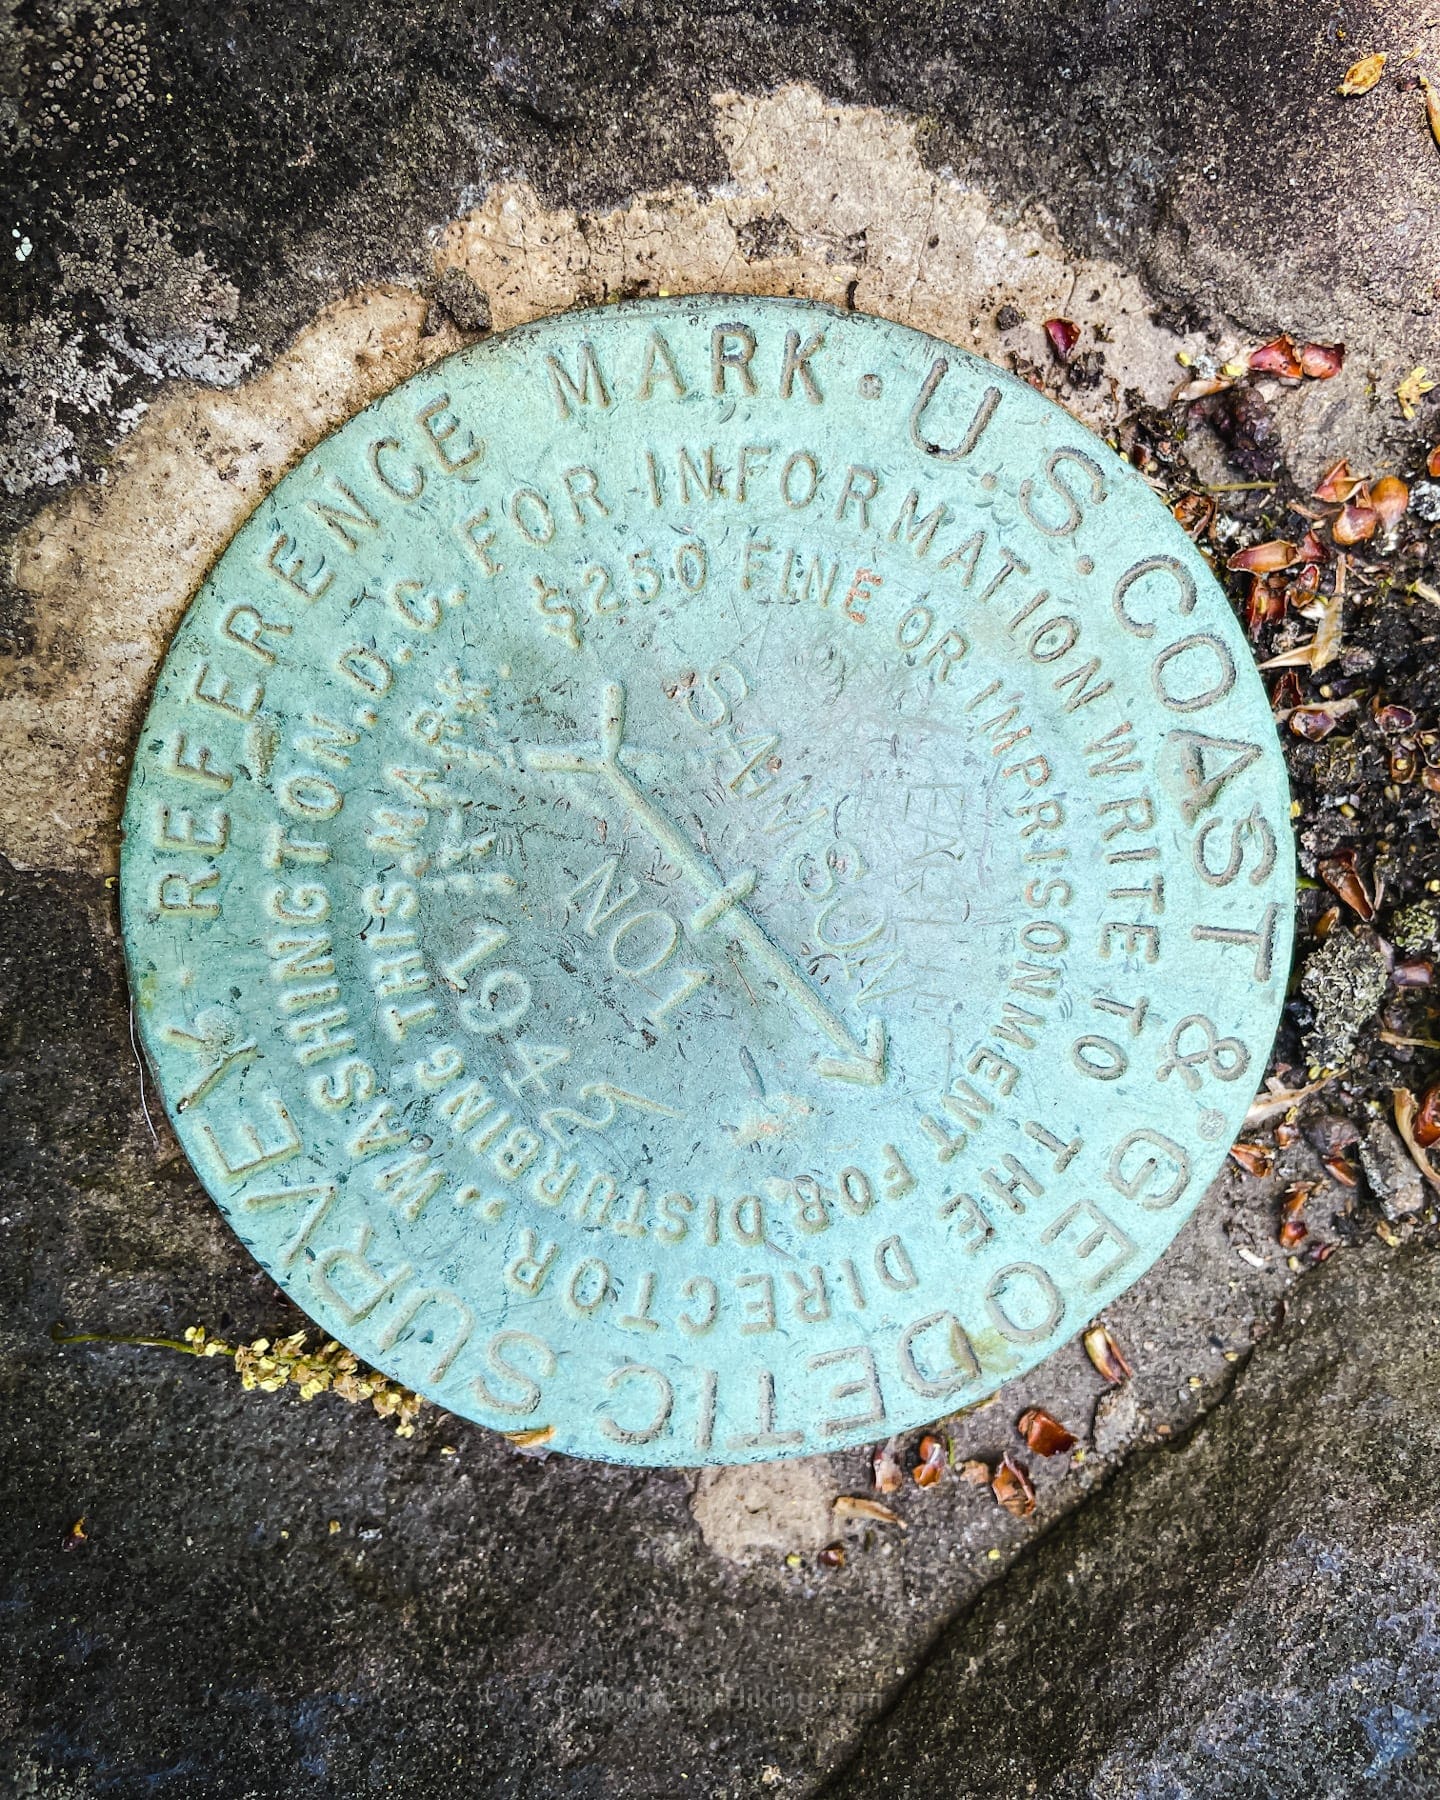 survey marker in rock